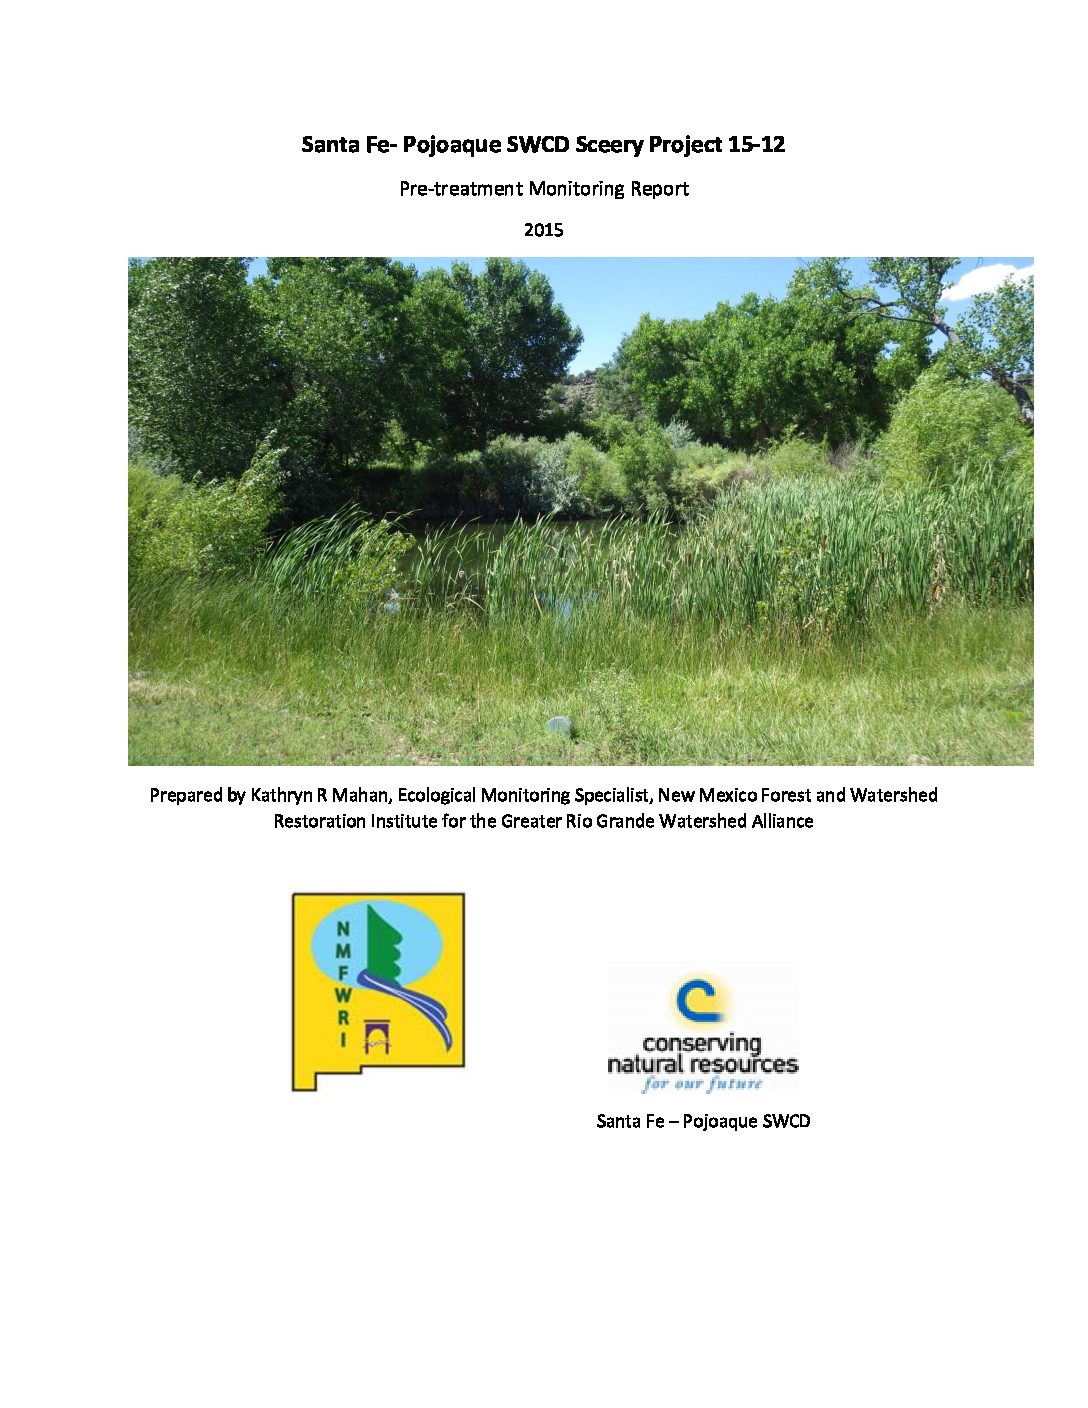 Sceery Project 15-12, Santa Fe- Pojoaque SWCD, Pre-treatment Monitoring Report 2015